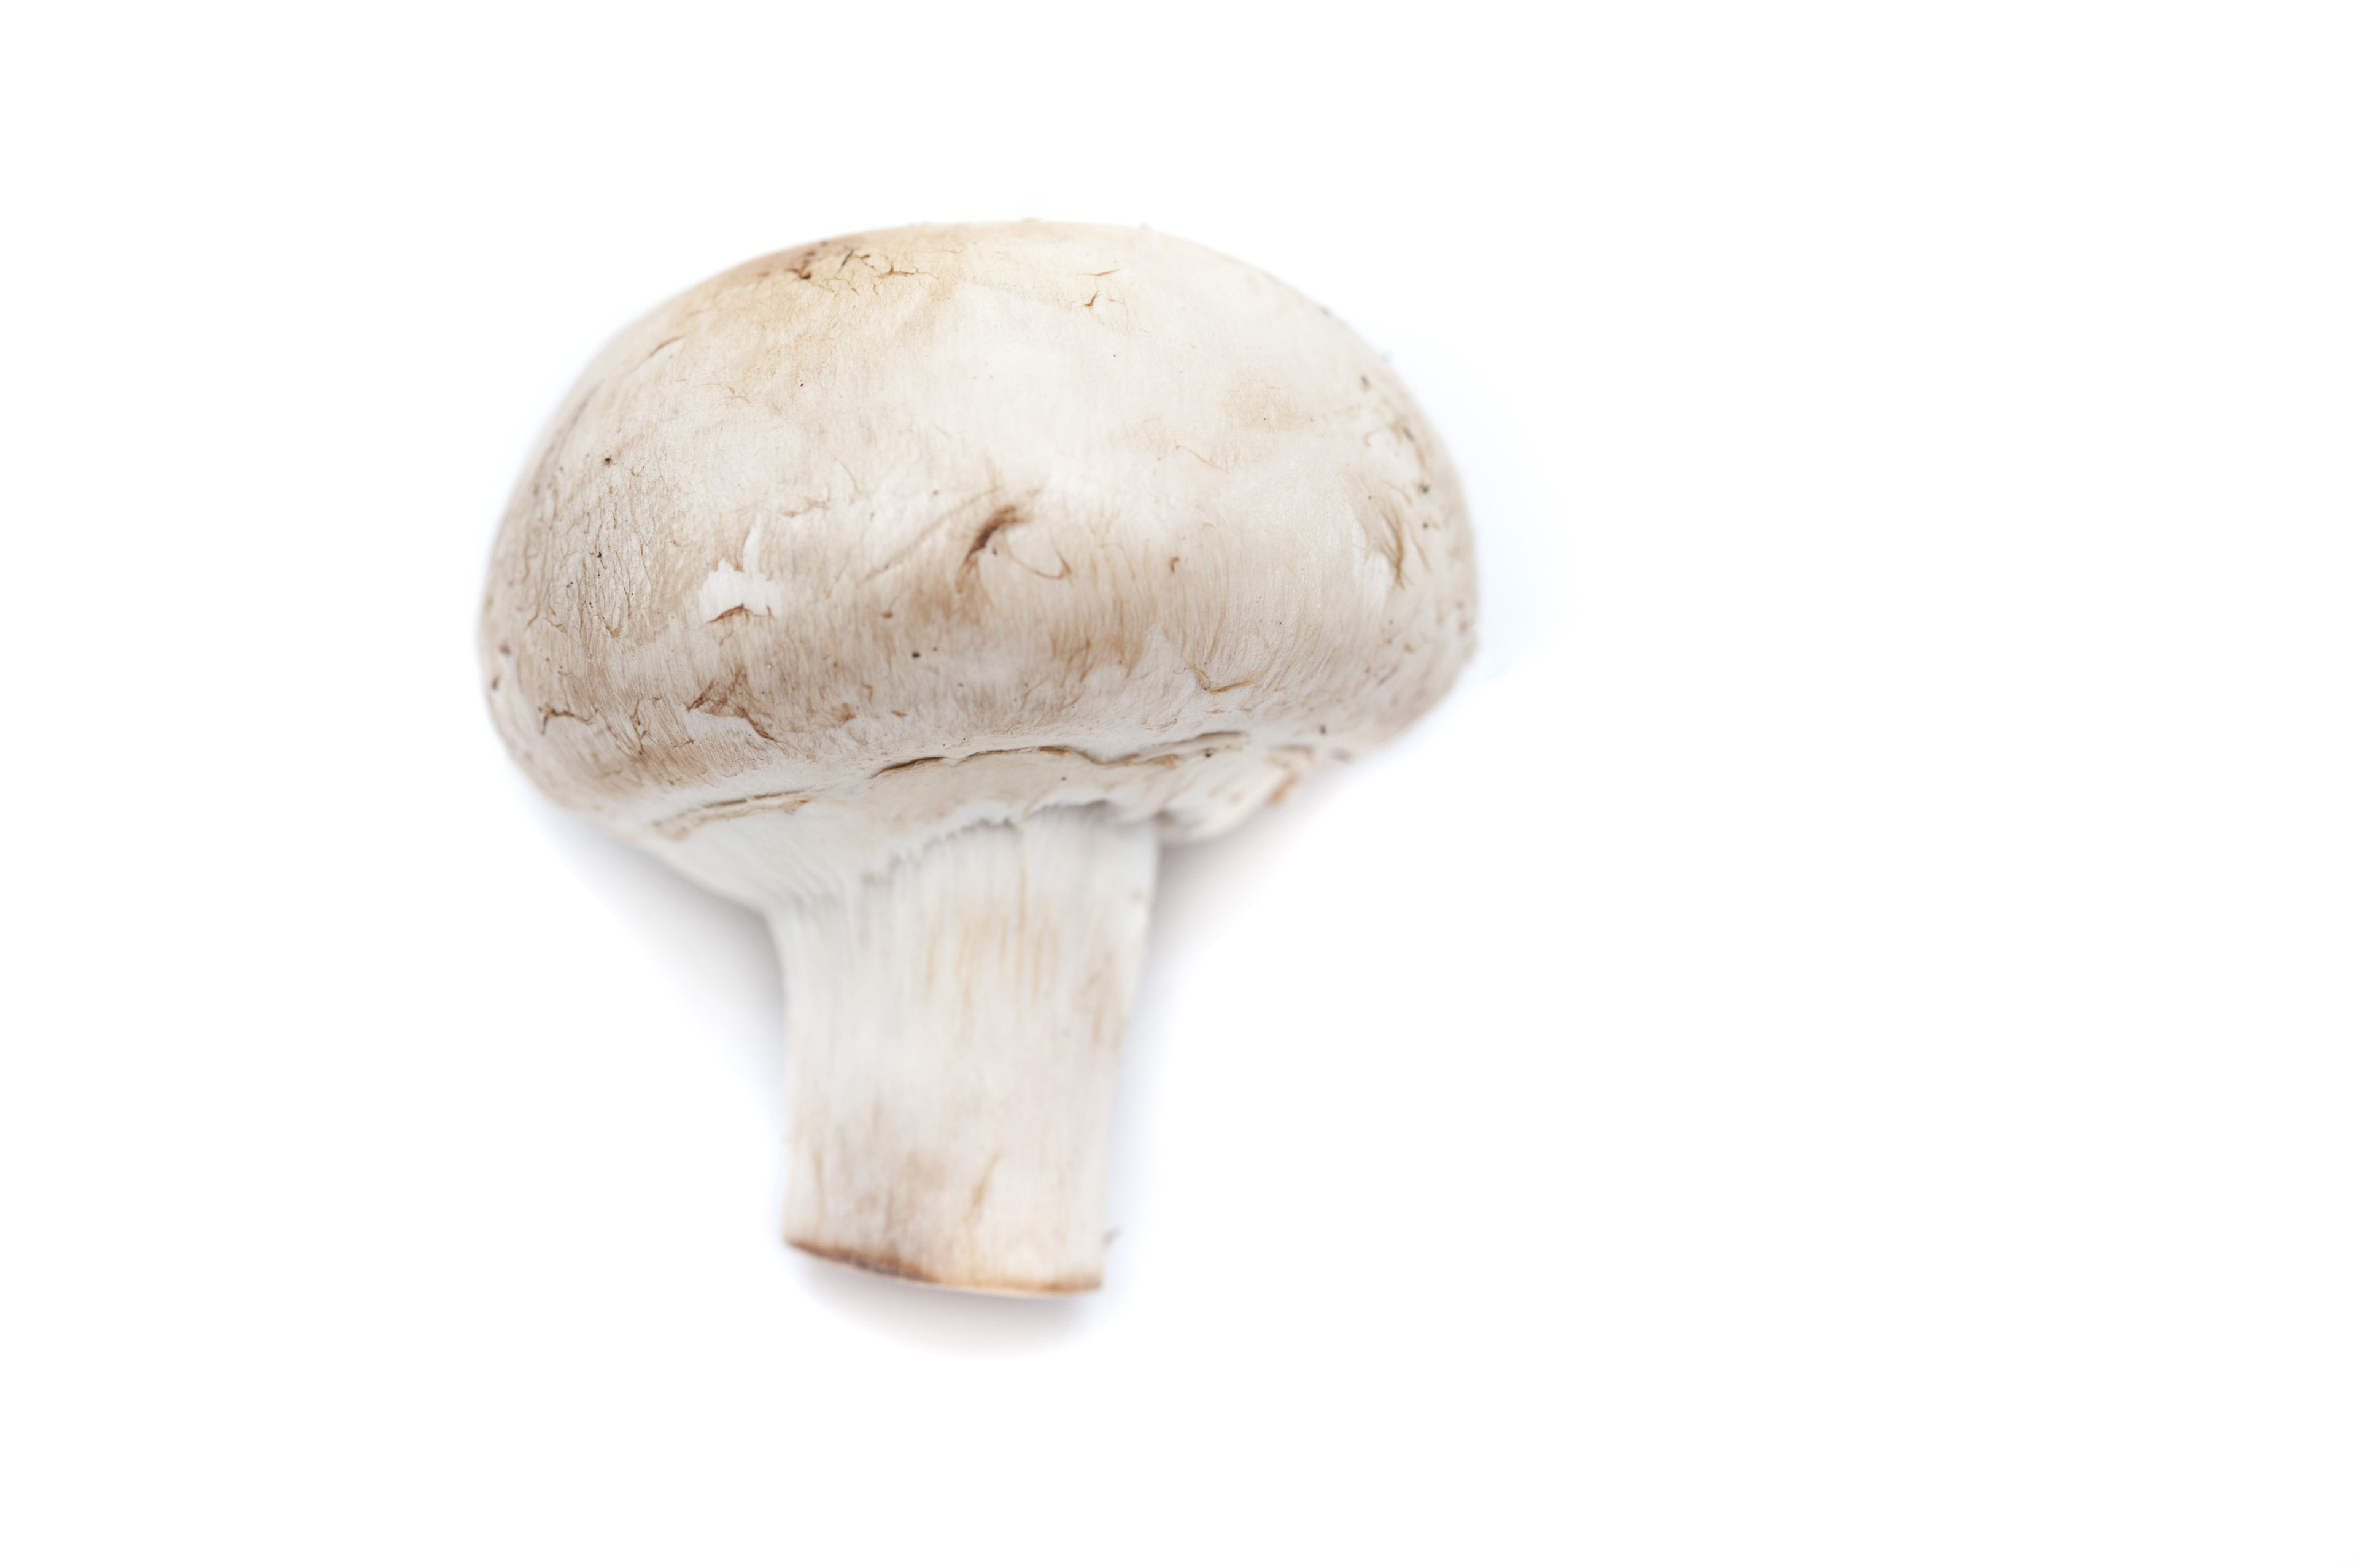 Image of Fresh White Mushroom on White Background | Freebie.Photography